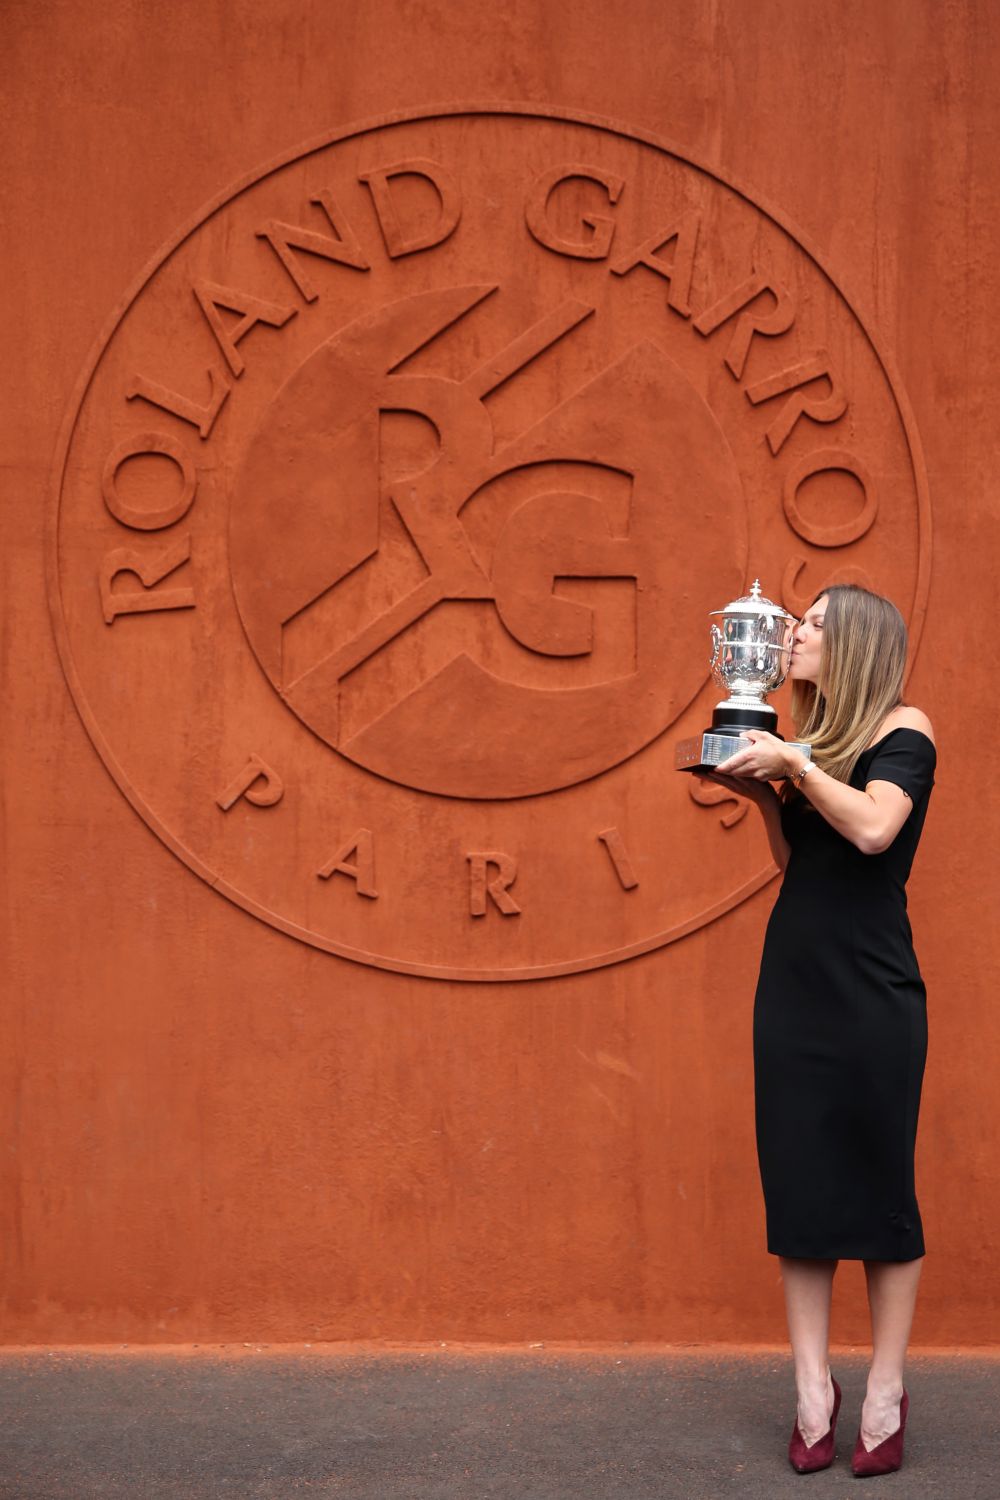 A avut loc sedinta foto a Simonei Halep cu trofeul Roland Garros! Cum s-a imbracat Simona la eveniment FOTO_18